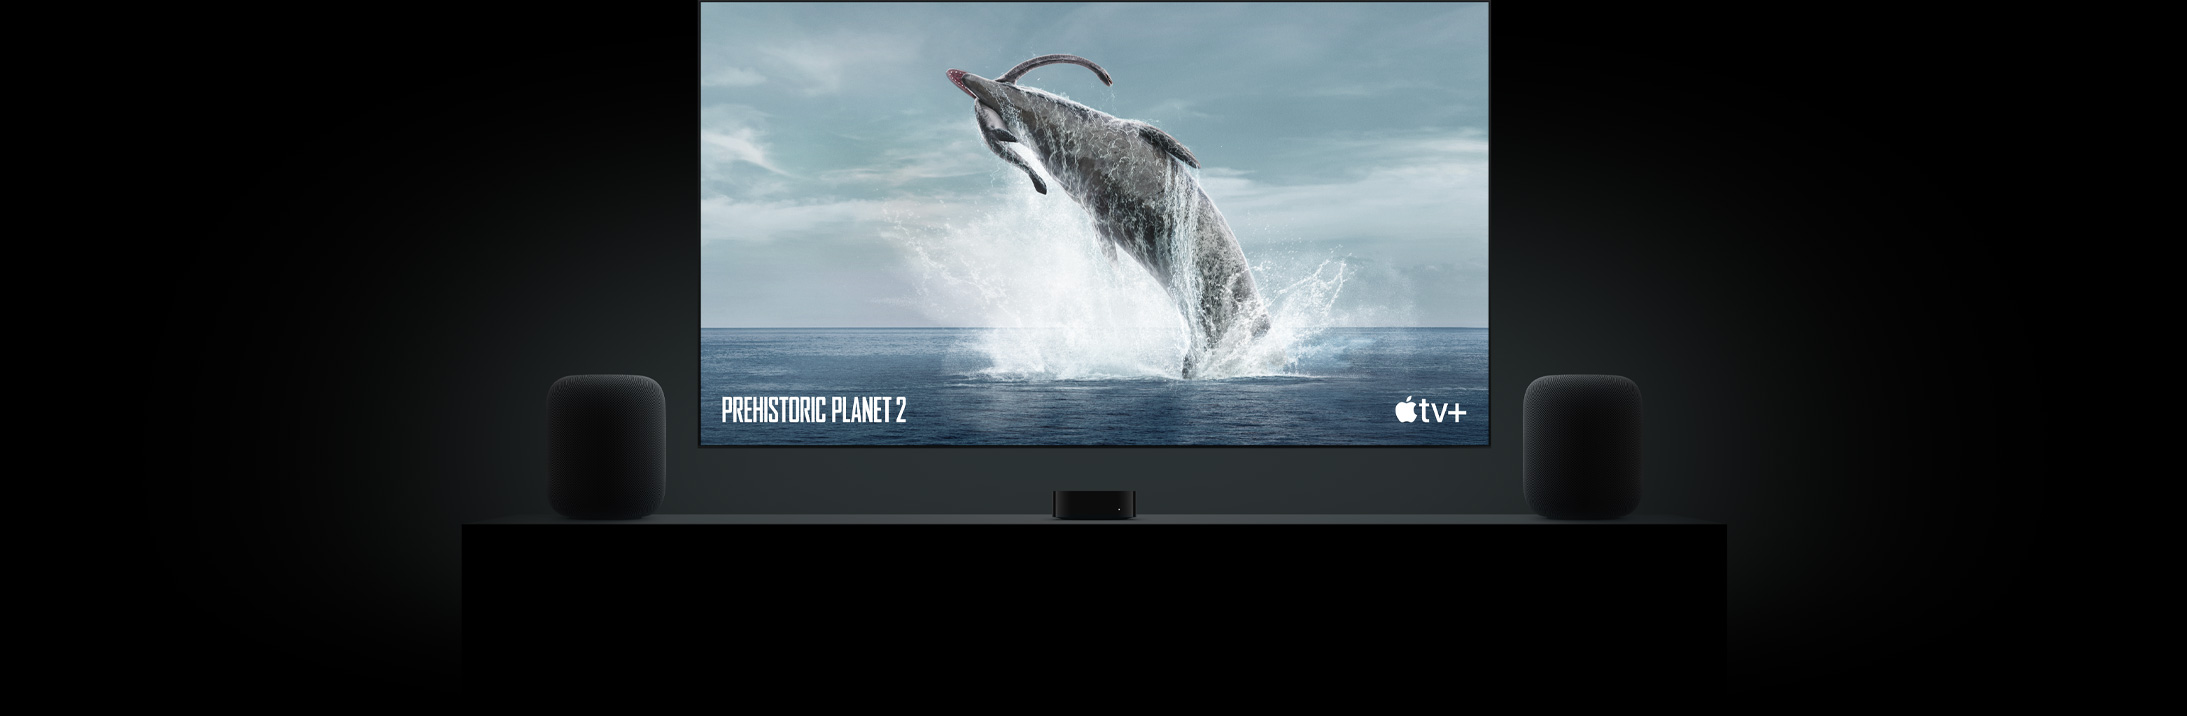 Большой телевизор с плоским экраном с ярким изображением динозавра с доисторической планеты.  Телевизор подвешен над Apple TV и обрамлен двумя динамиками HomePod, расположенными на консоли в гостиной.